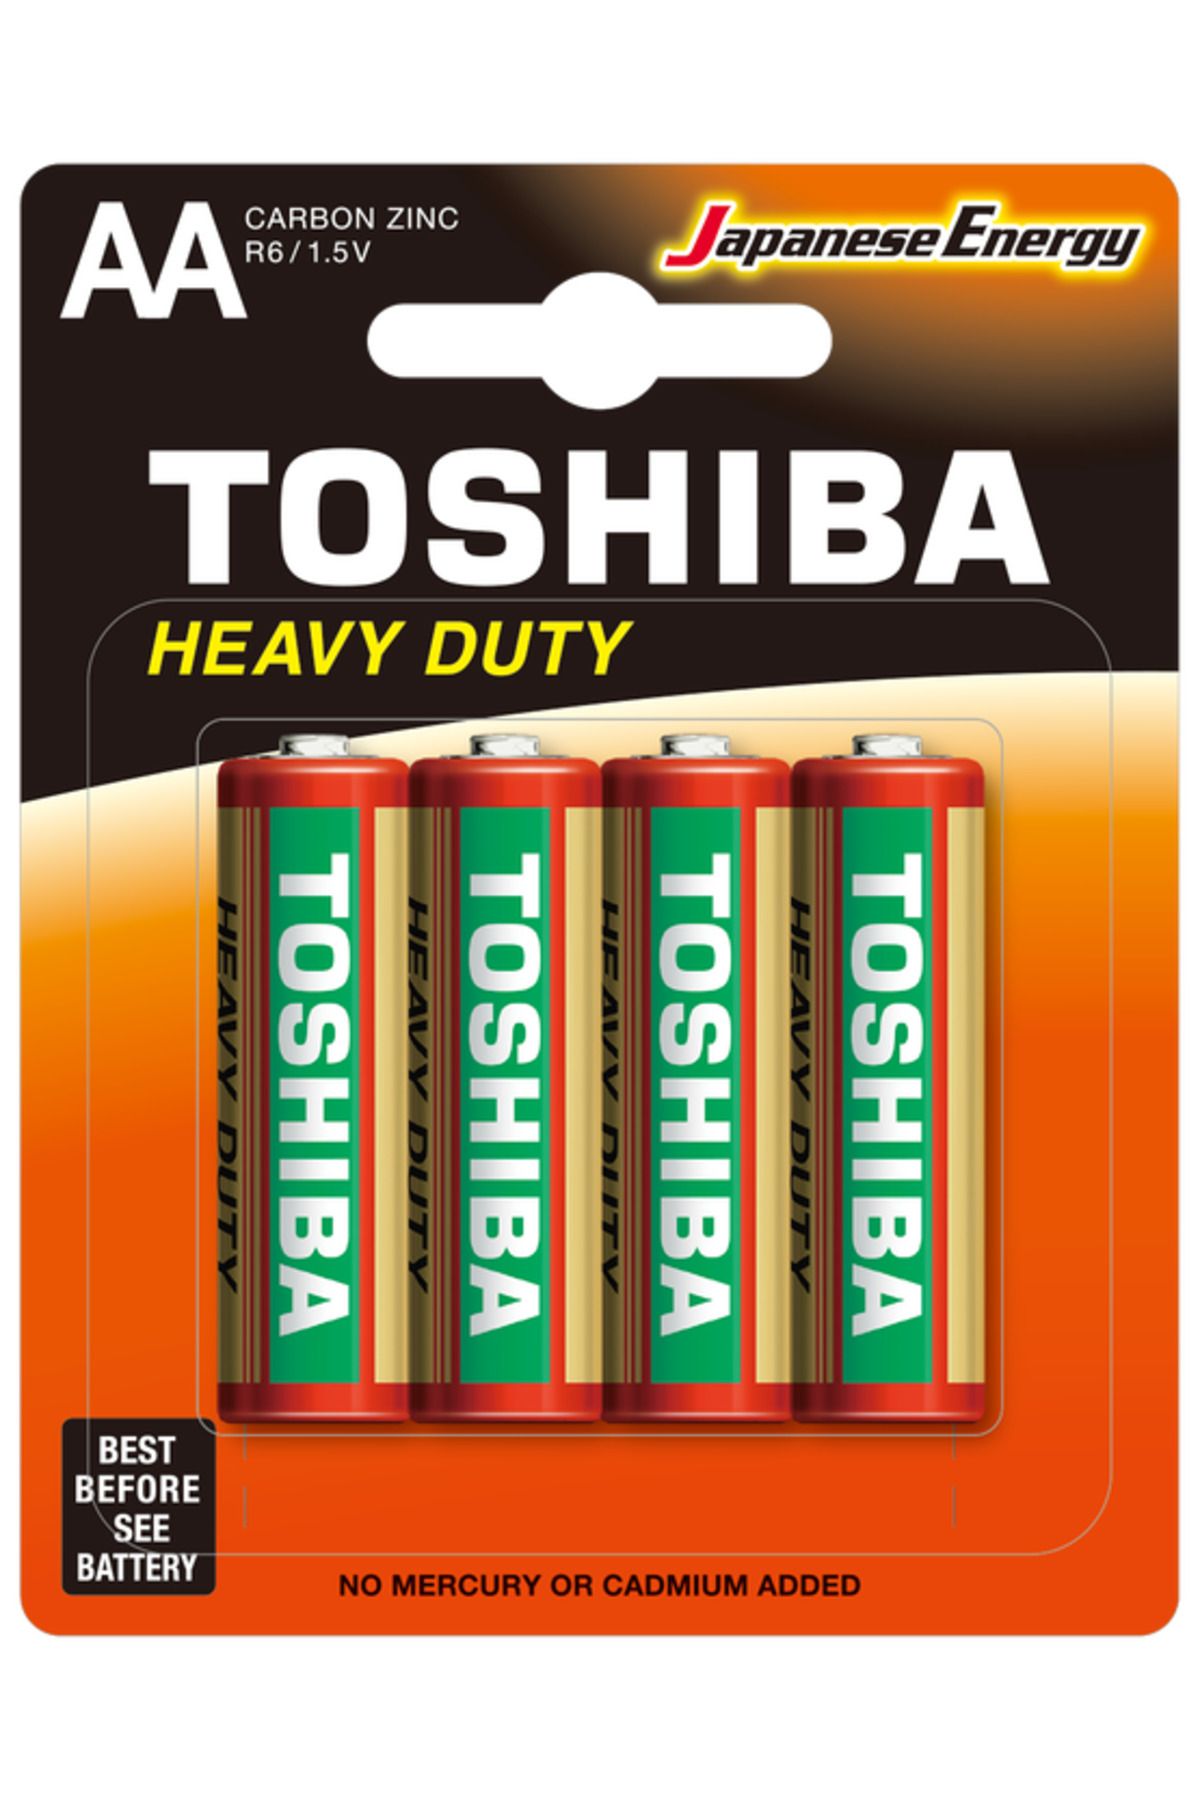 Toshiba Toshıba R6kg Bls. Kalem Pil 4lü